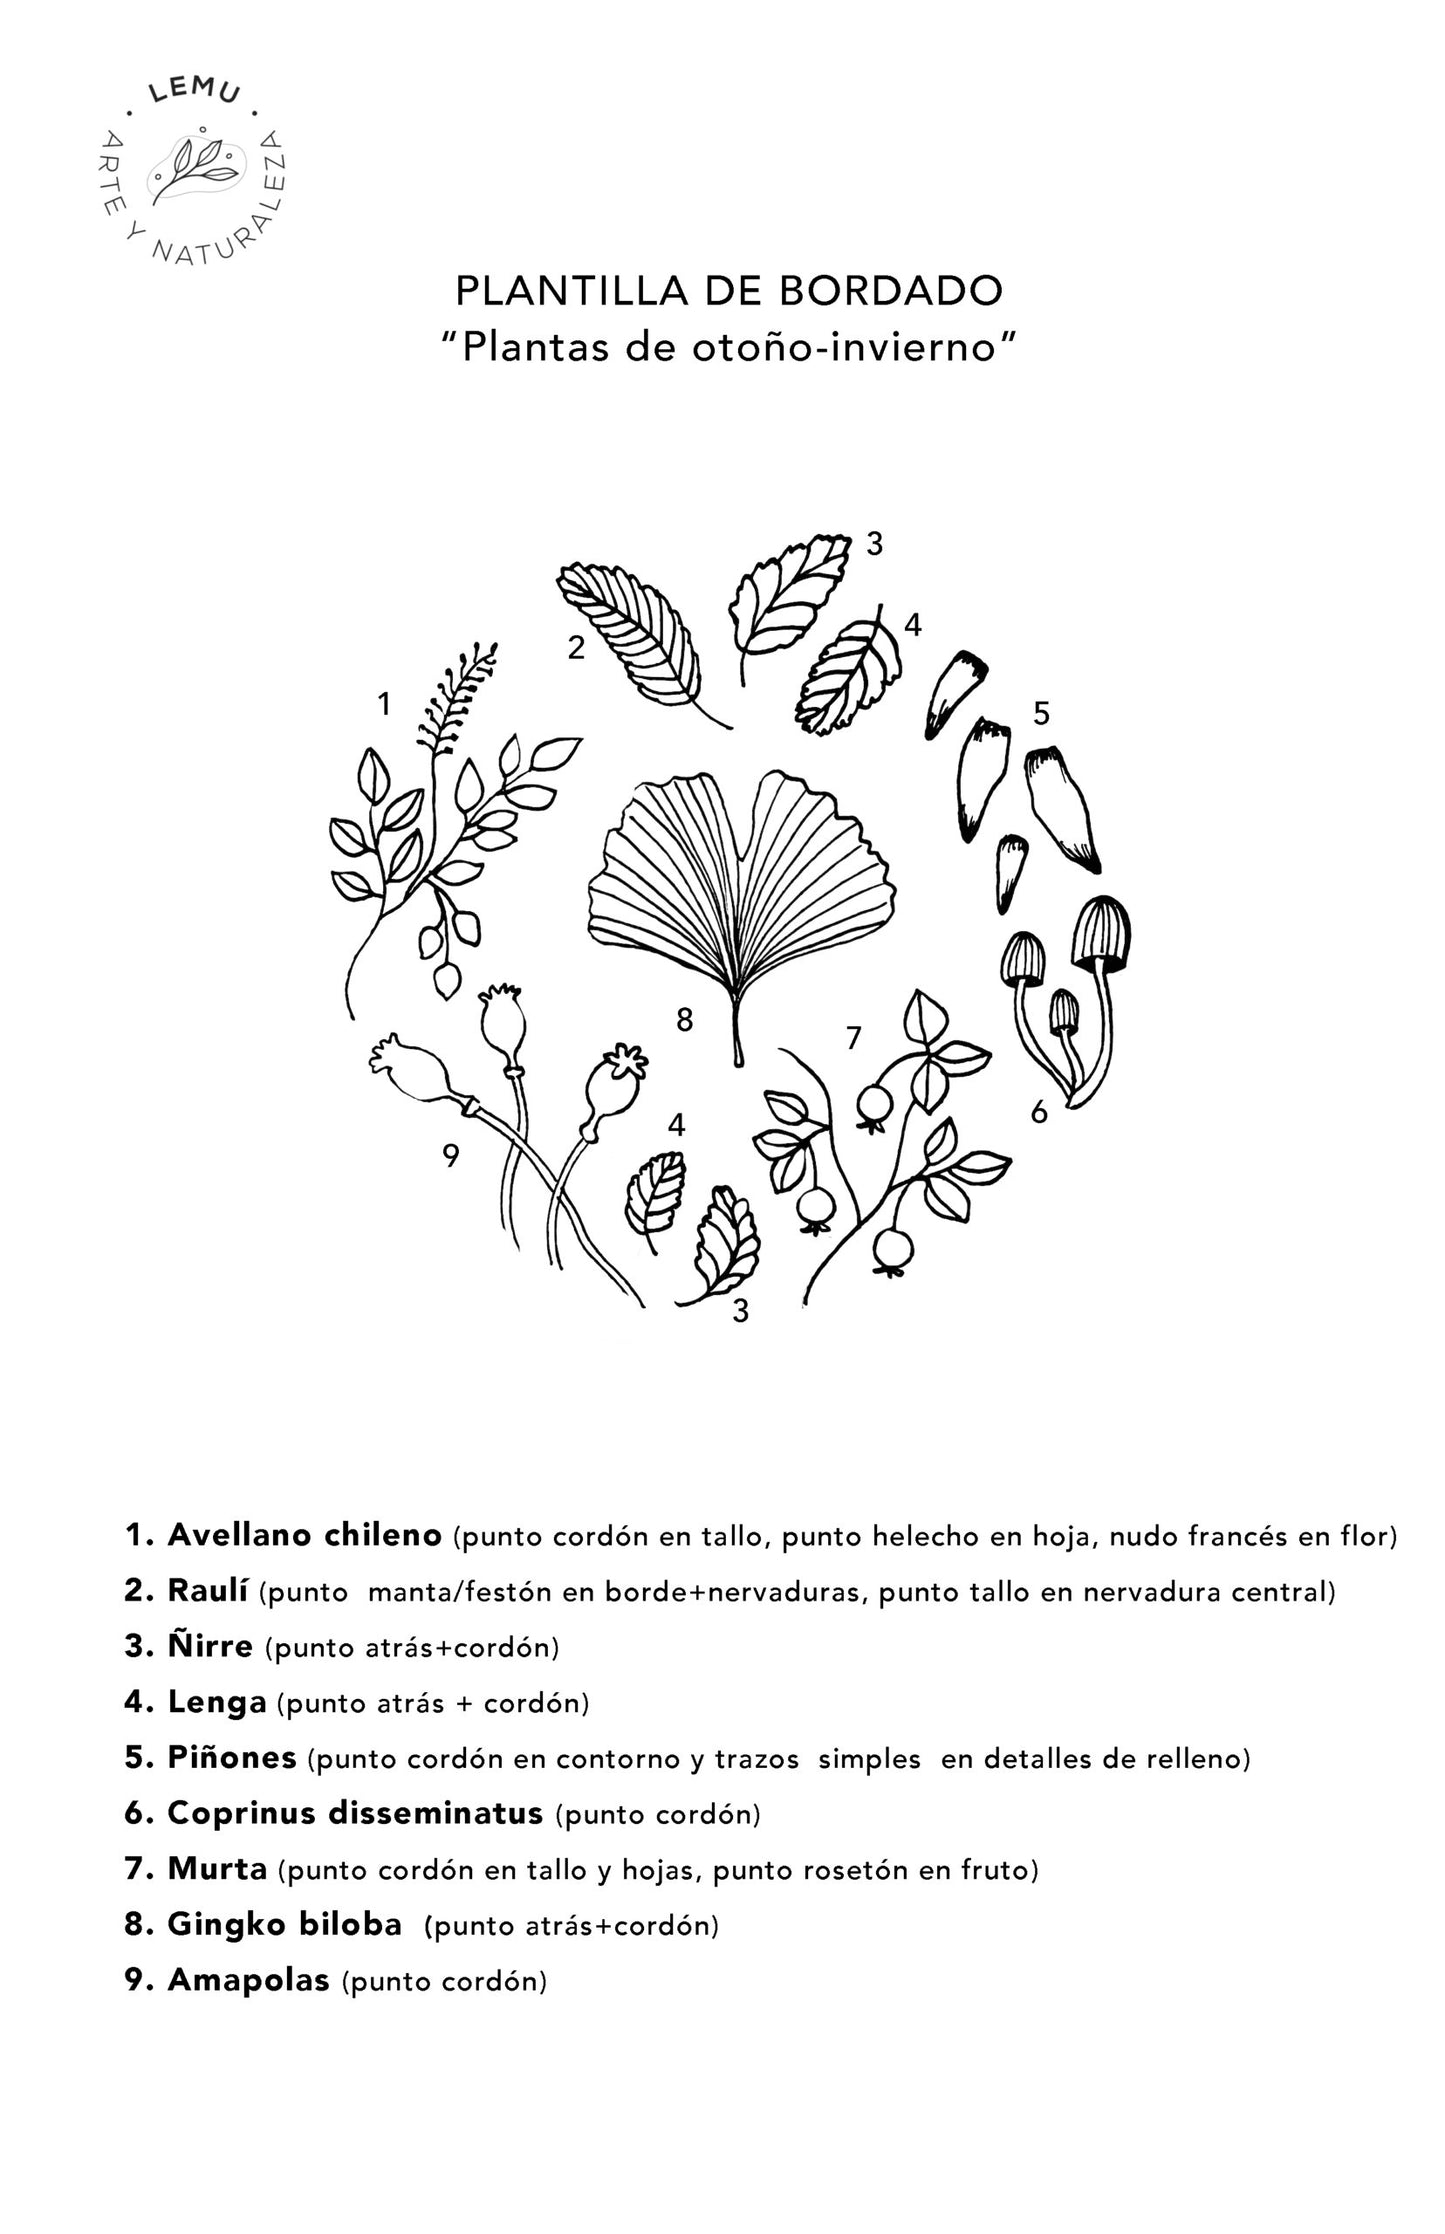 PLANTILLAS DE BORDADO (PDF)